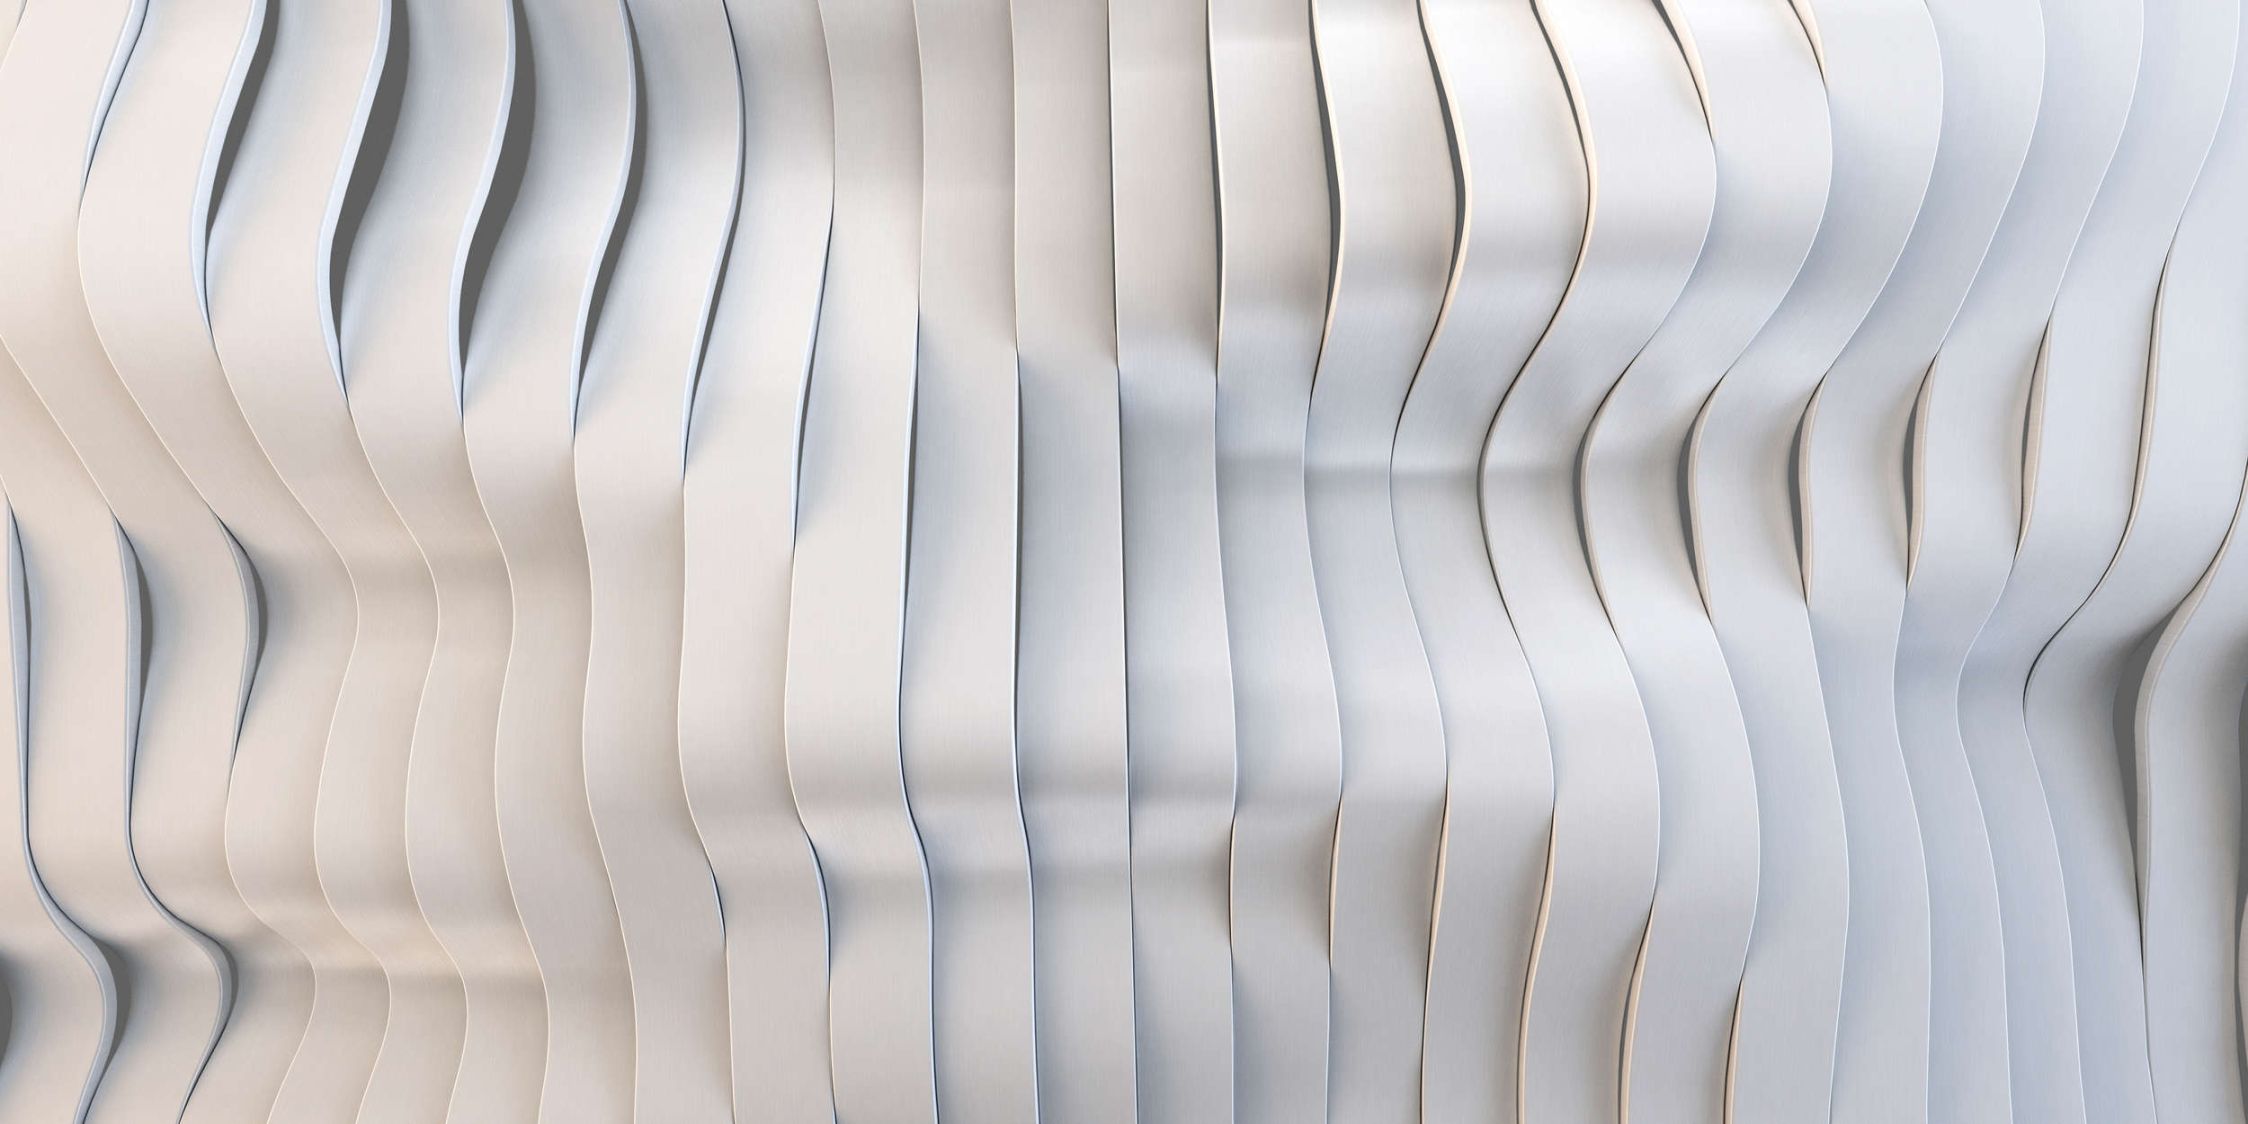             solaris 1 - papier peint en papier au design futuriste de lignes électriques - intissé mat et lisse
        